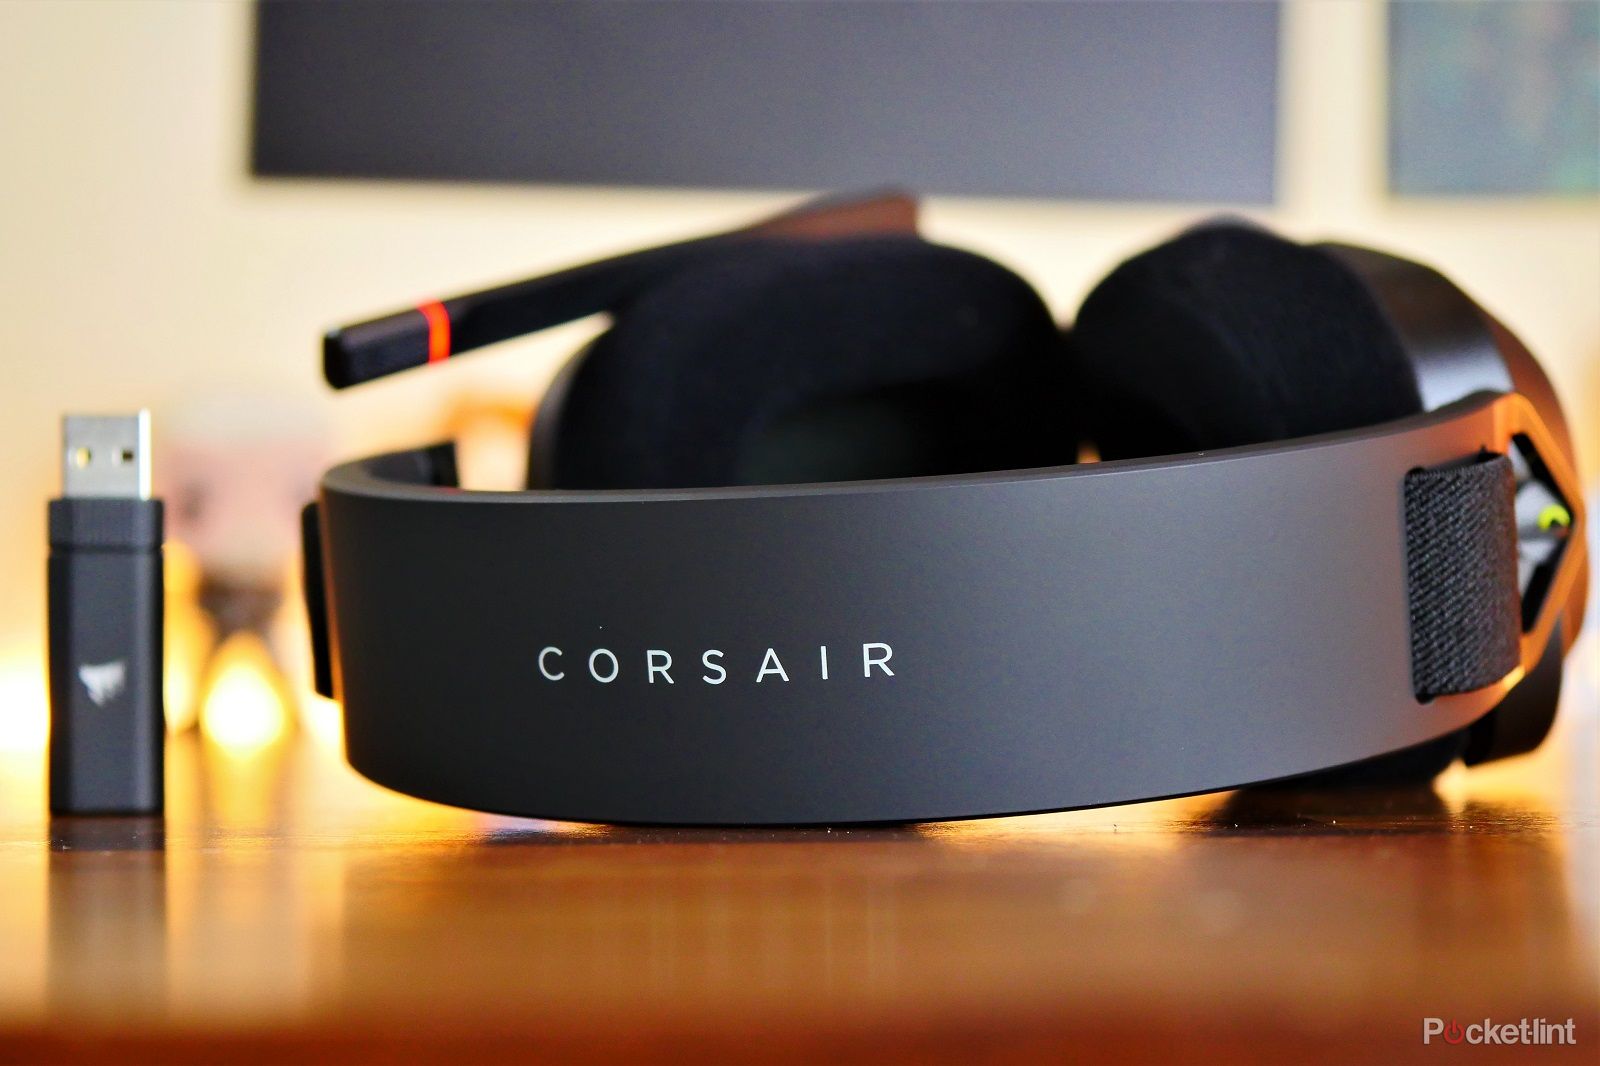 Análisis CORSAIR HS80 MAX Wireless, auriculares inalámbricos con Dolby Atmos  y Bluetooth 5.0 para jugadores